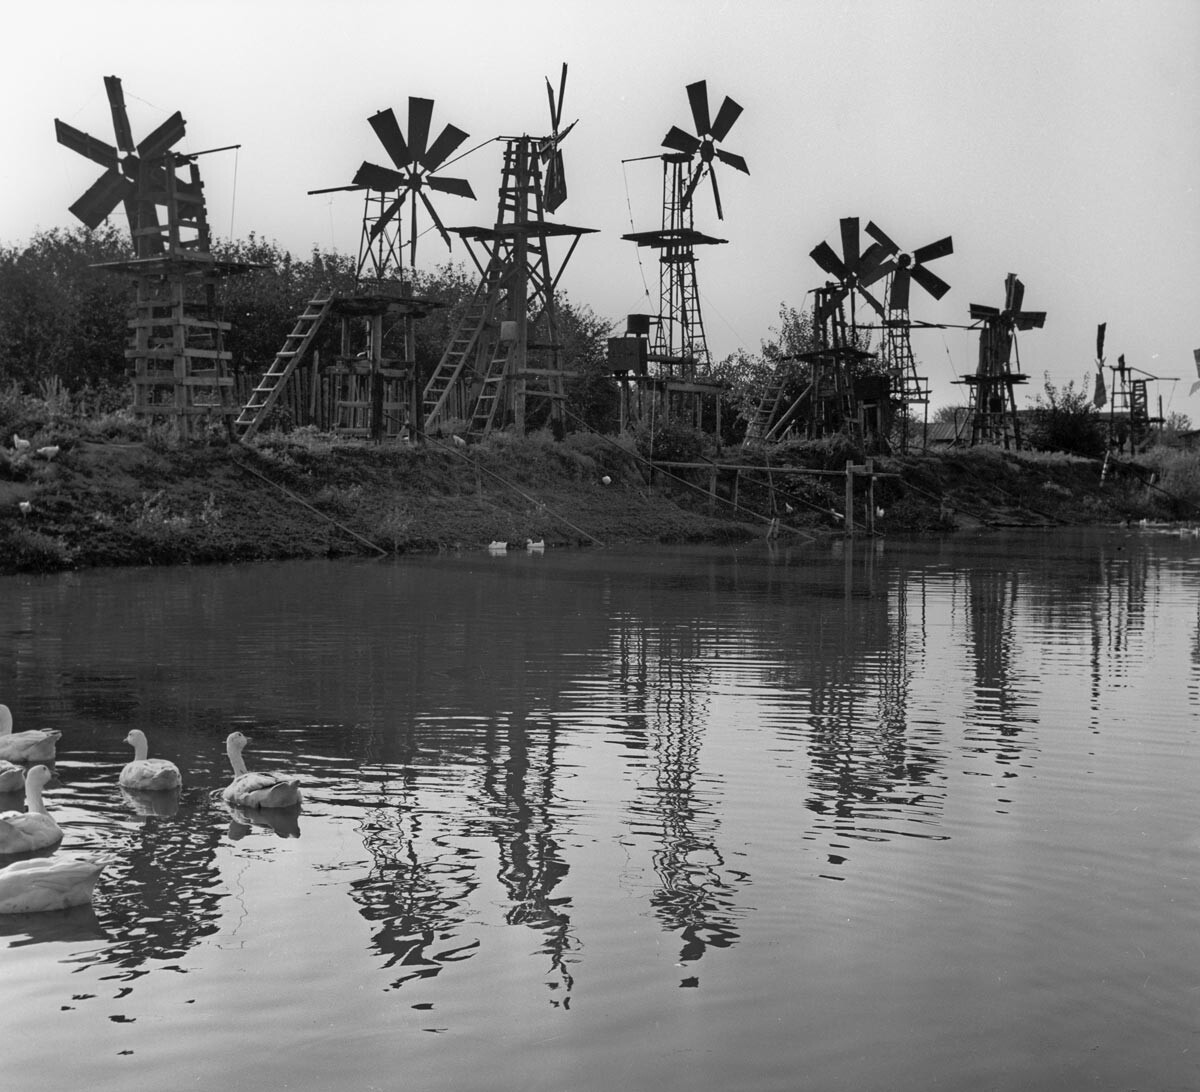 Astrakhan. Un impianto eolico per l'irrigazione delle aree agricole, 1969

